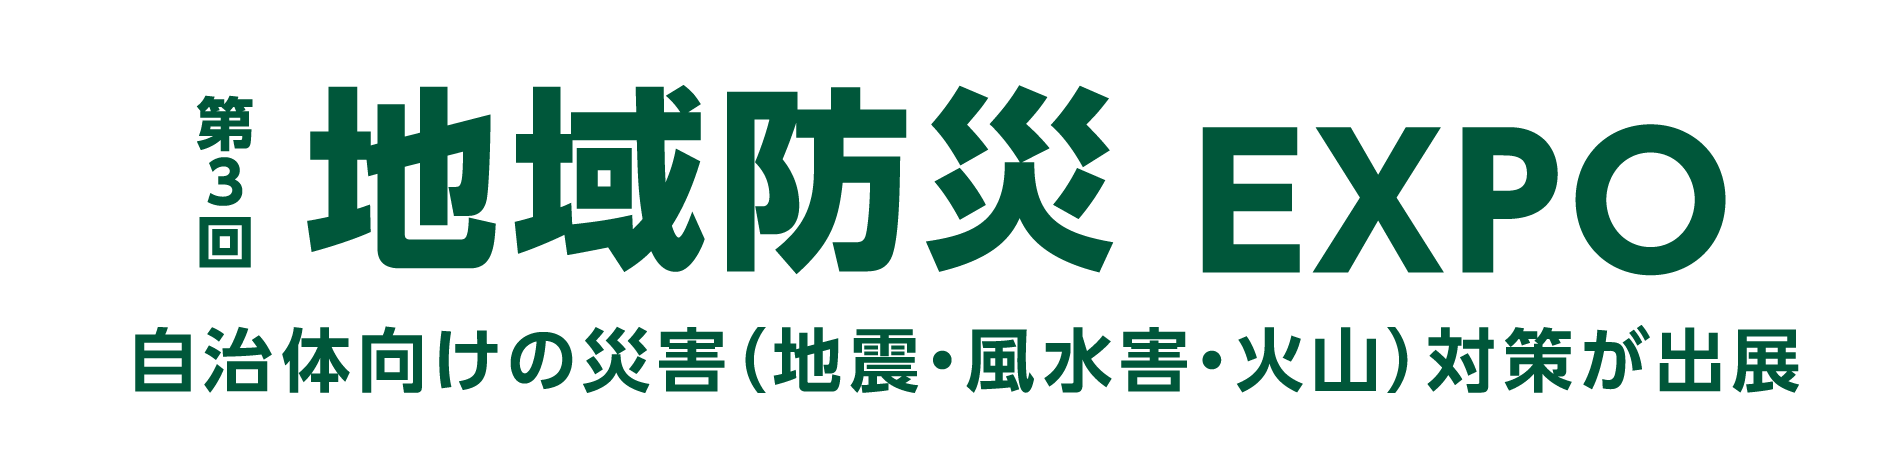 地域防災EXPO公式ロゴ